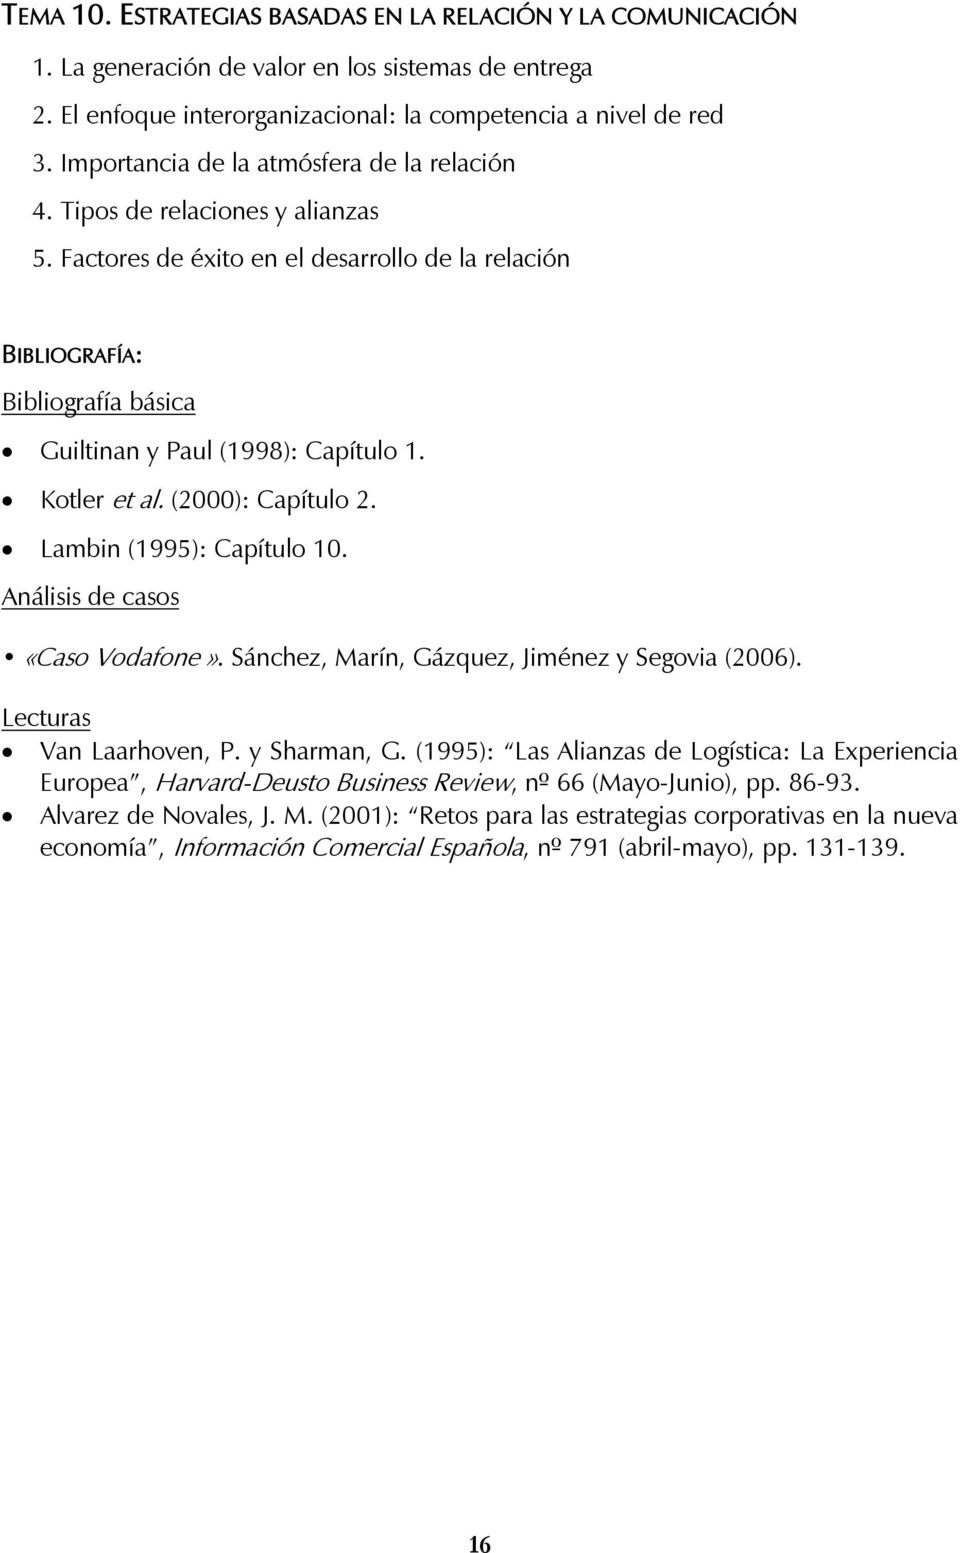 Lambin (1995): Capítulo 10. Análisis de casos «Caso Vodafone». Sánchez, Marín, Gázquez, Jiménez y Segovia (2006). Van Laarhoven, P. y Sharman, G.